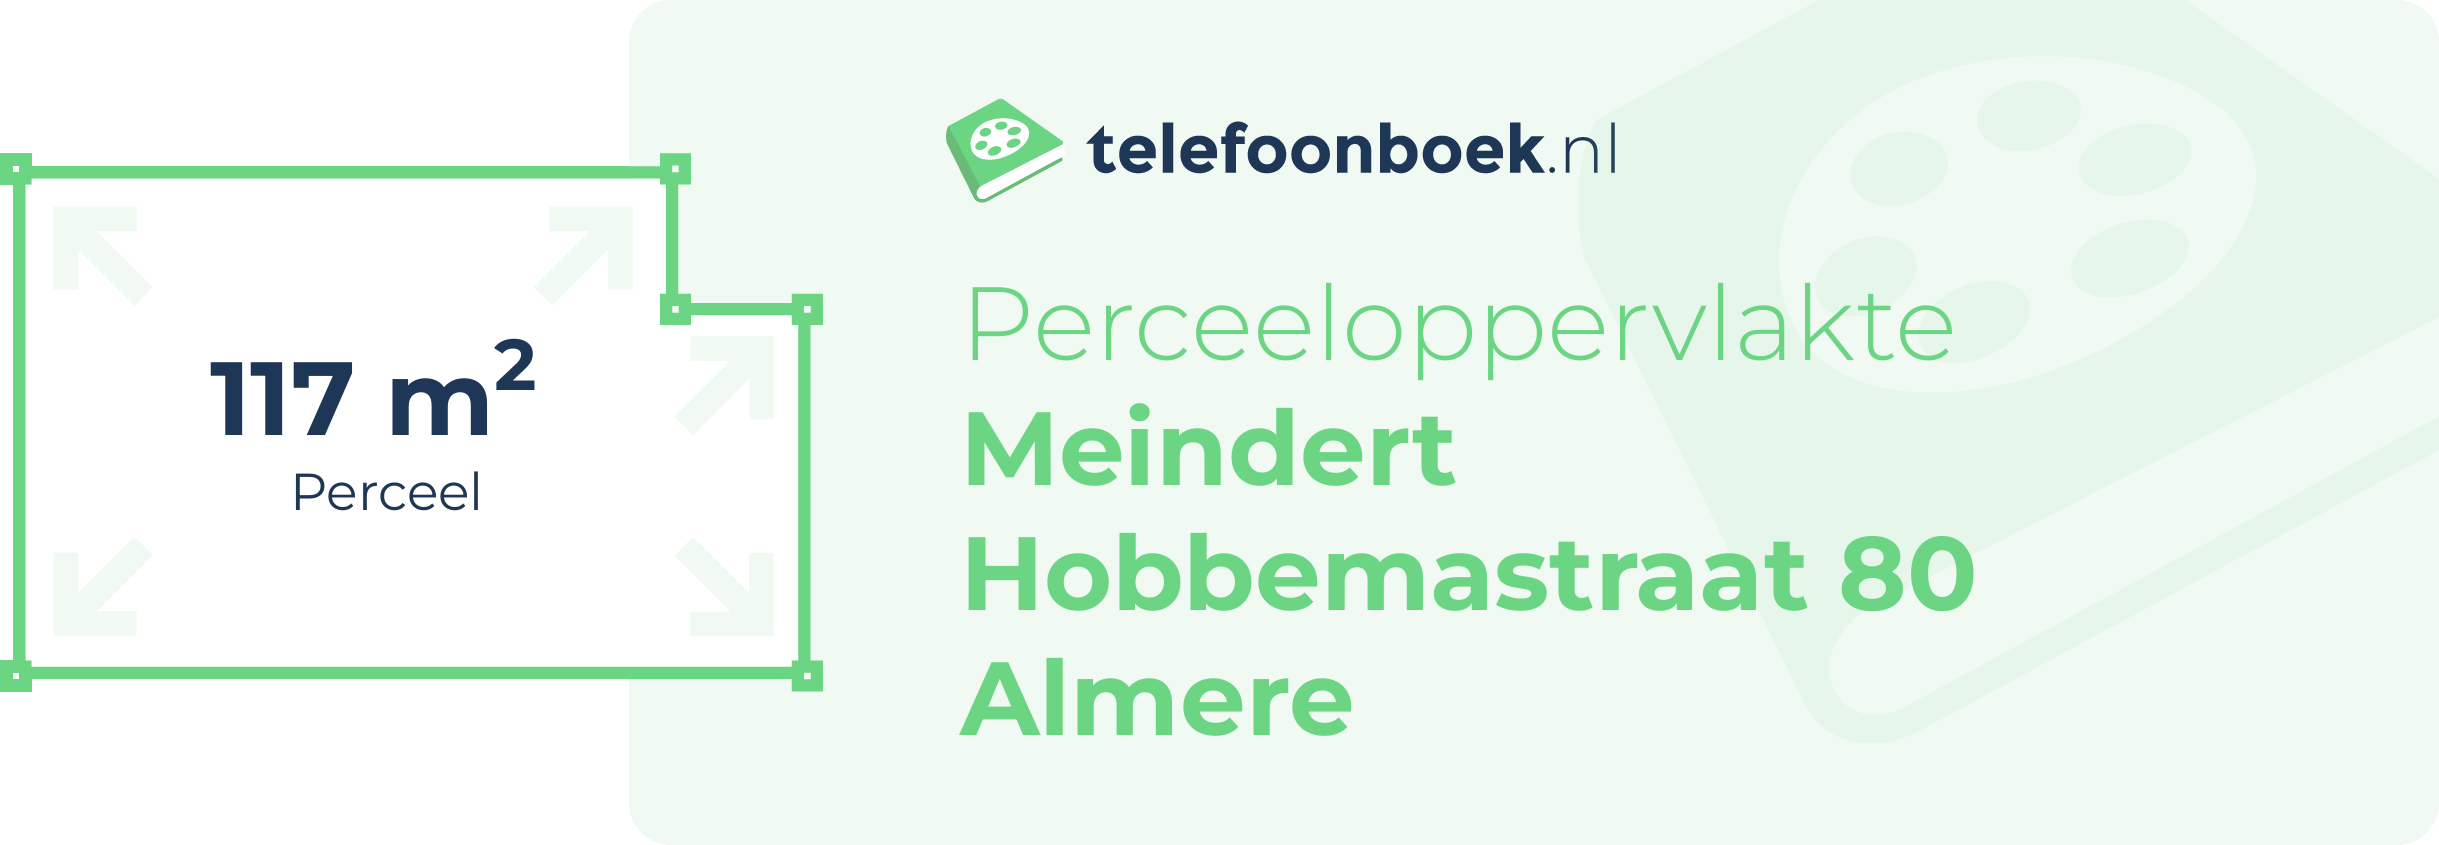 Perceeloppervlakte Meindert Hobbemastraat 80 Almere